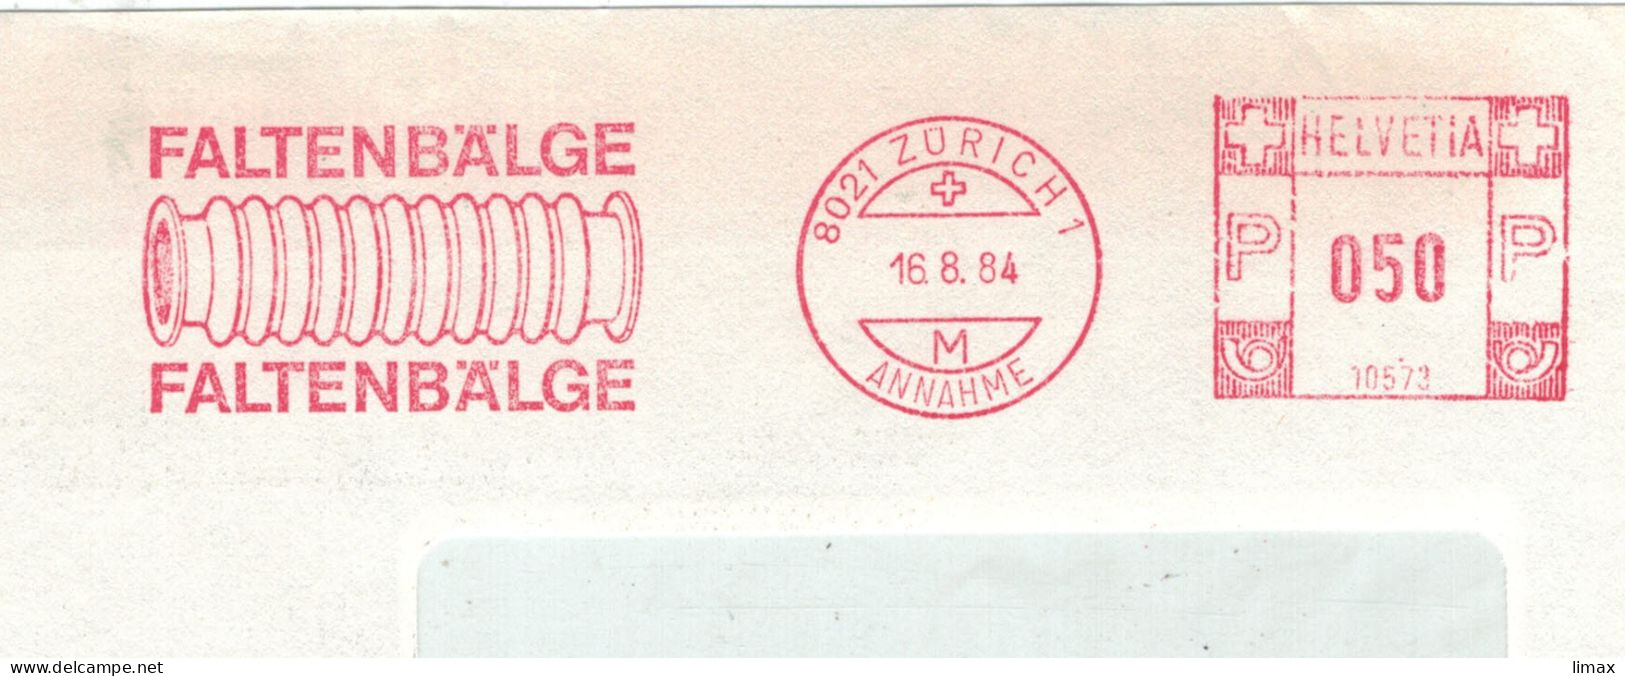 8021 Zürich 1984 Annahme Faltenbälge No. 10573 - Aufsatz Für Fotoapparate Nahaufnahmen - Frankeermachinen